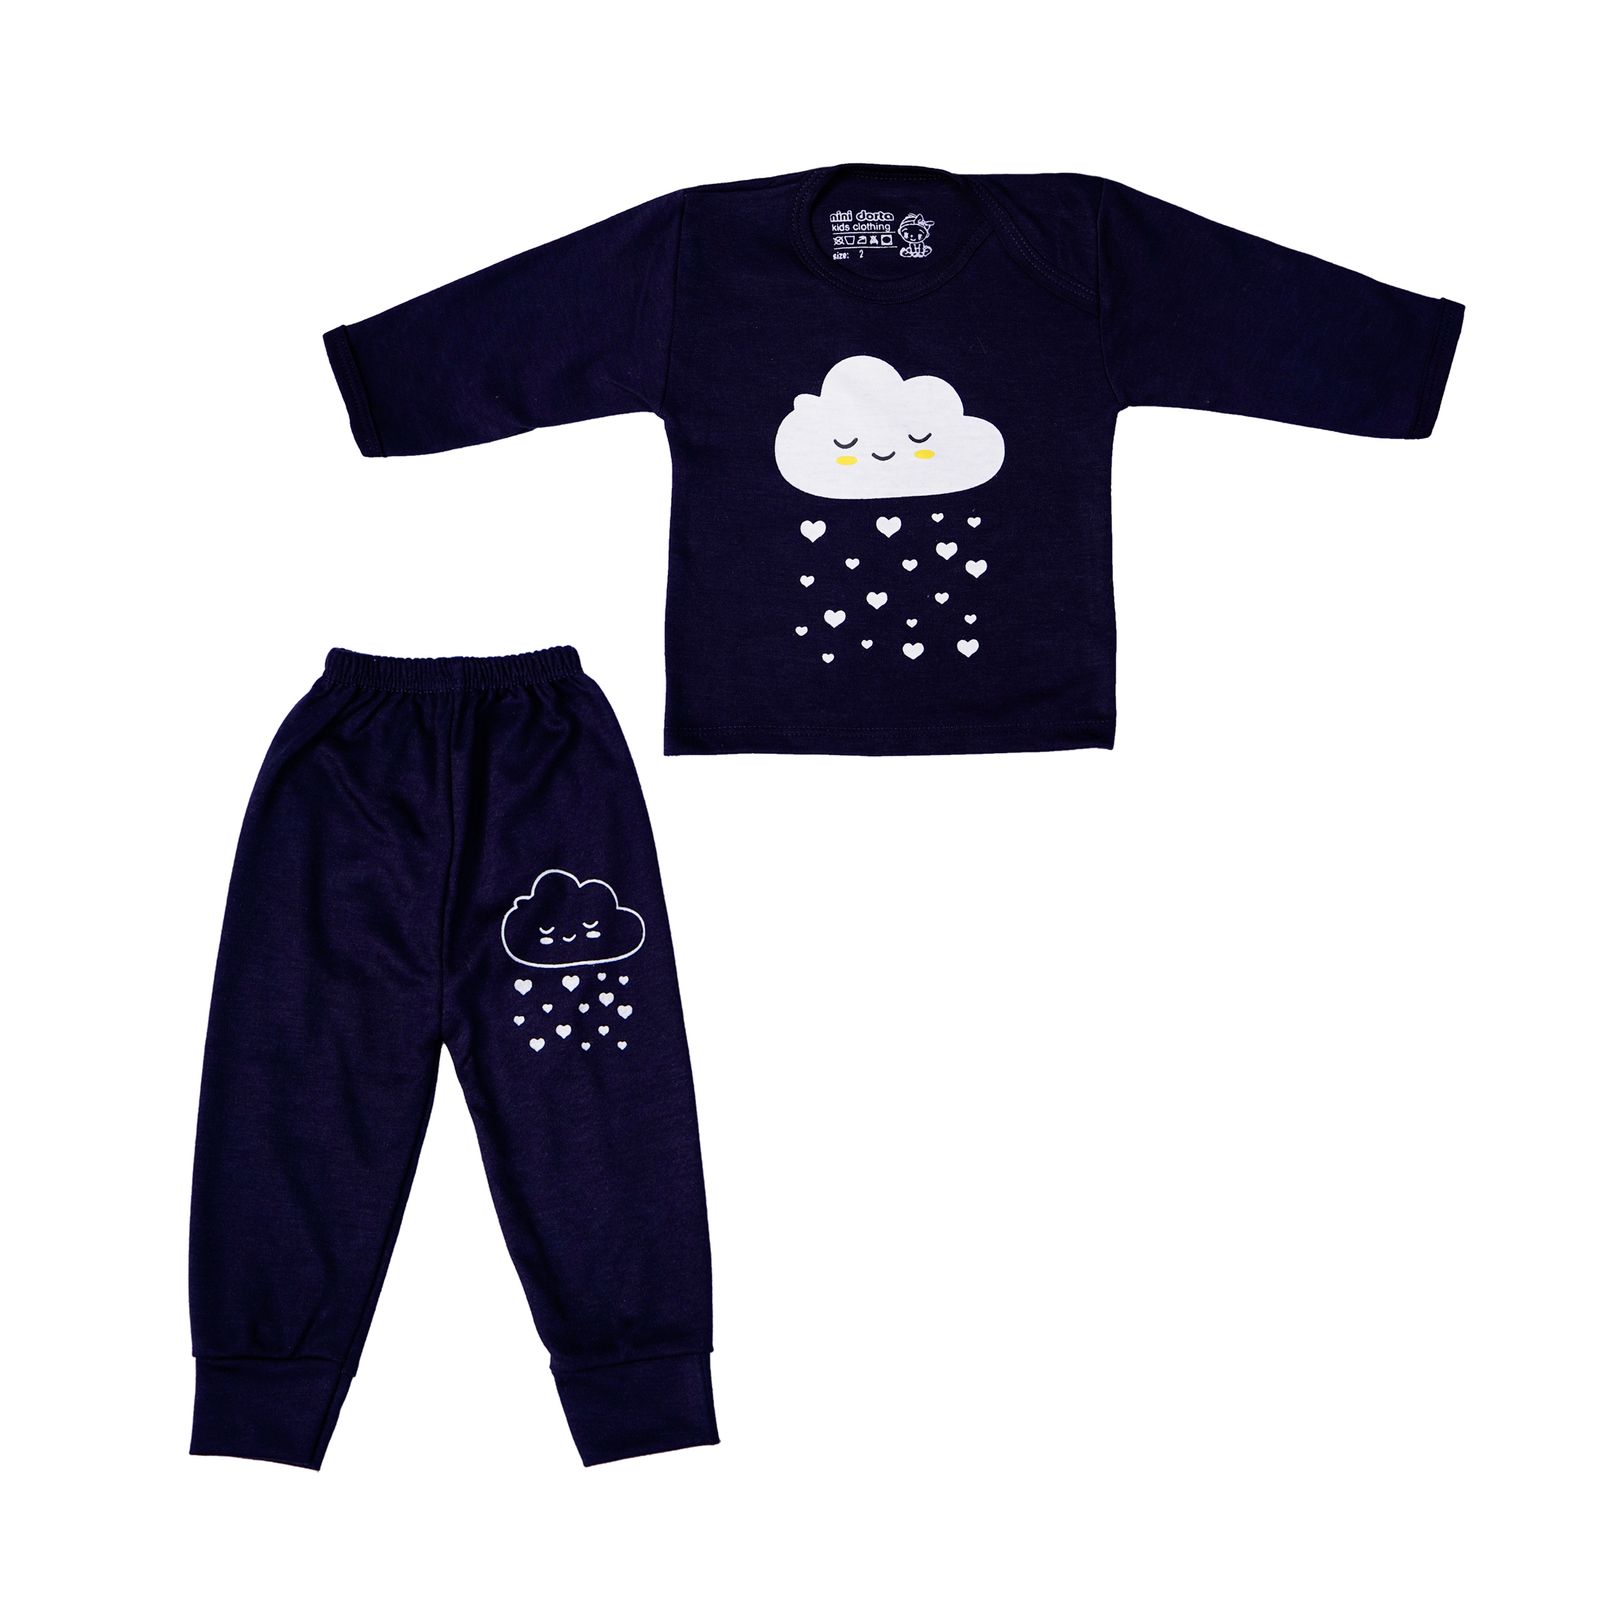 ست تی شرت و شلوار نوزادی مدل ابر بارانی کد 5 رنگ سرمه ای -  - 1